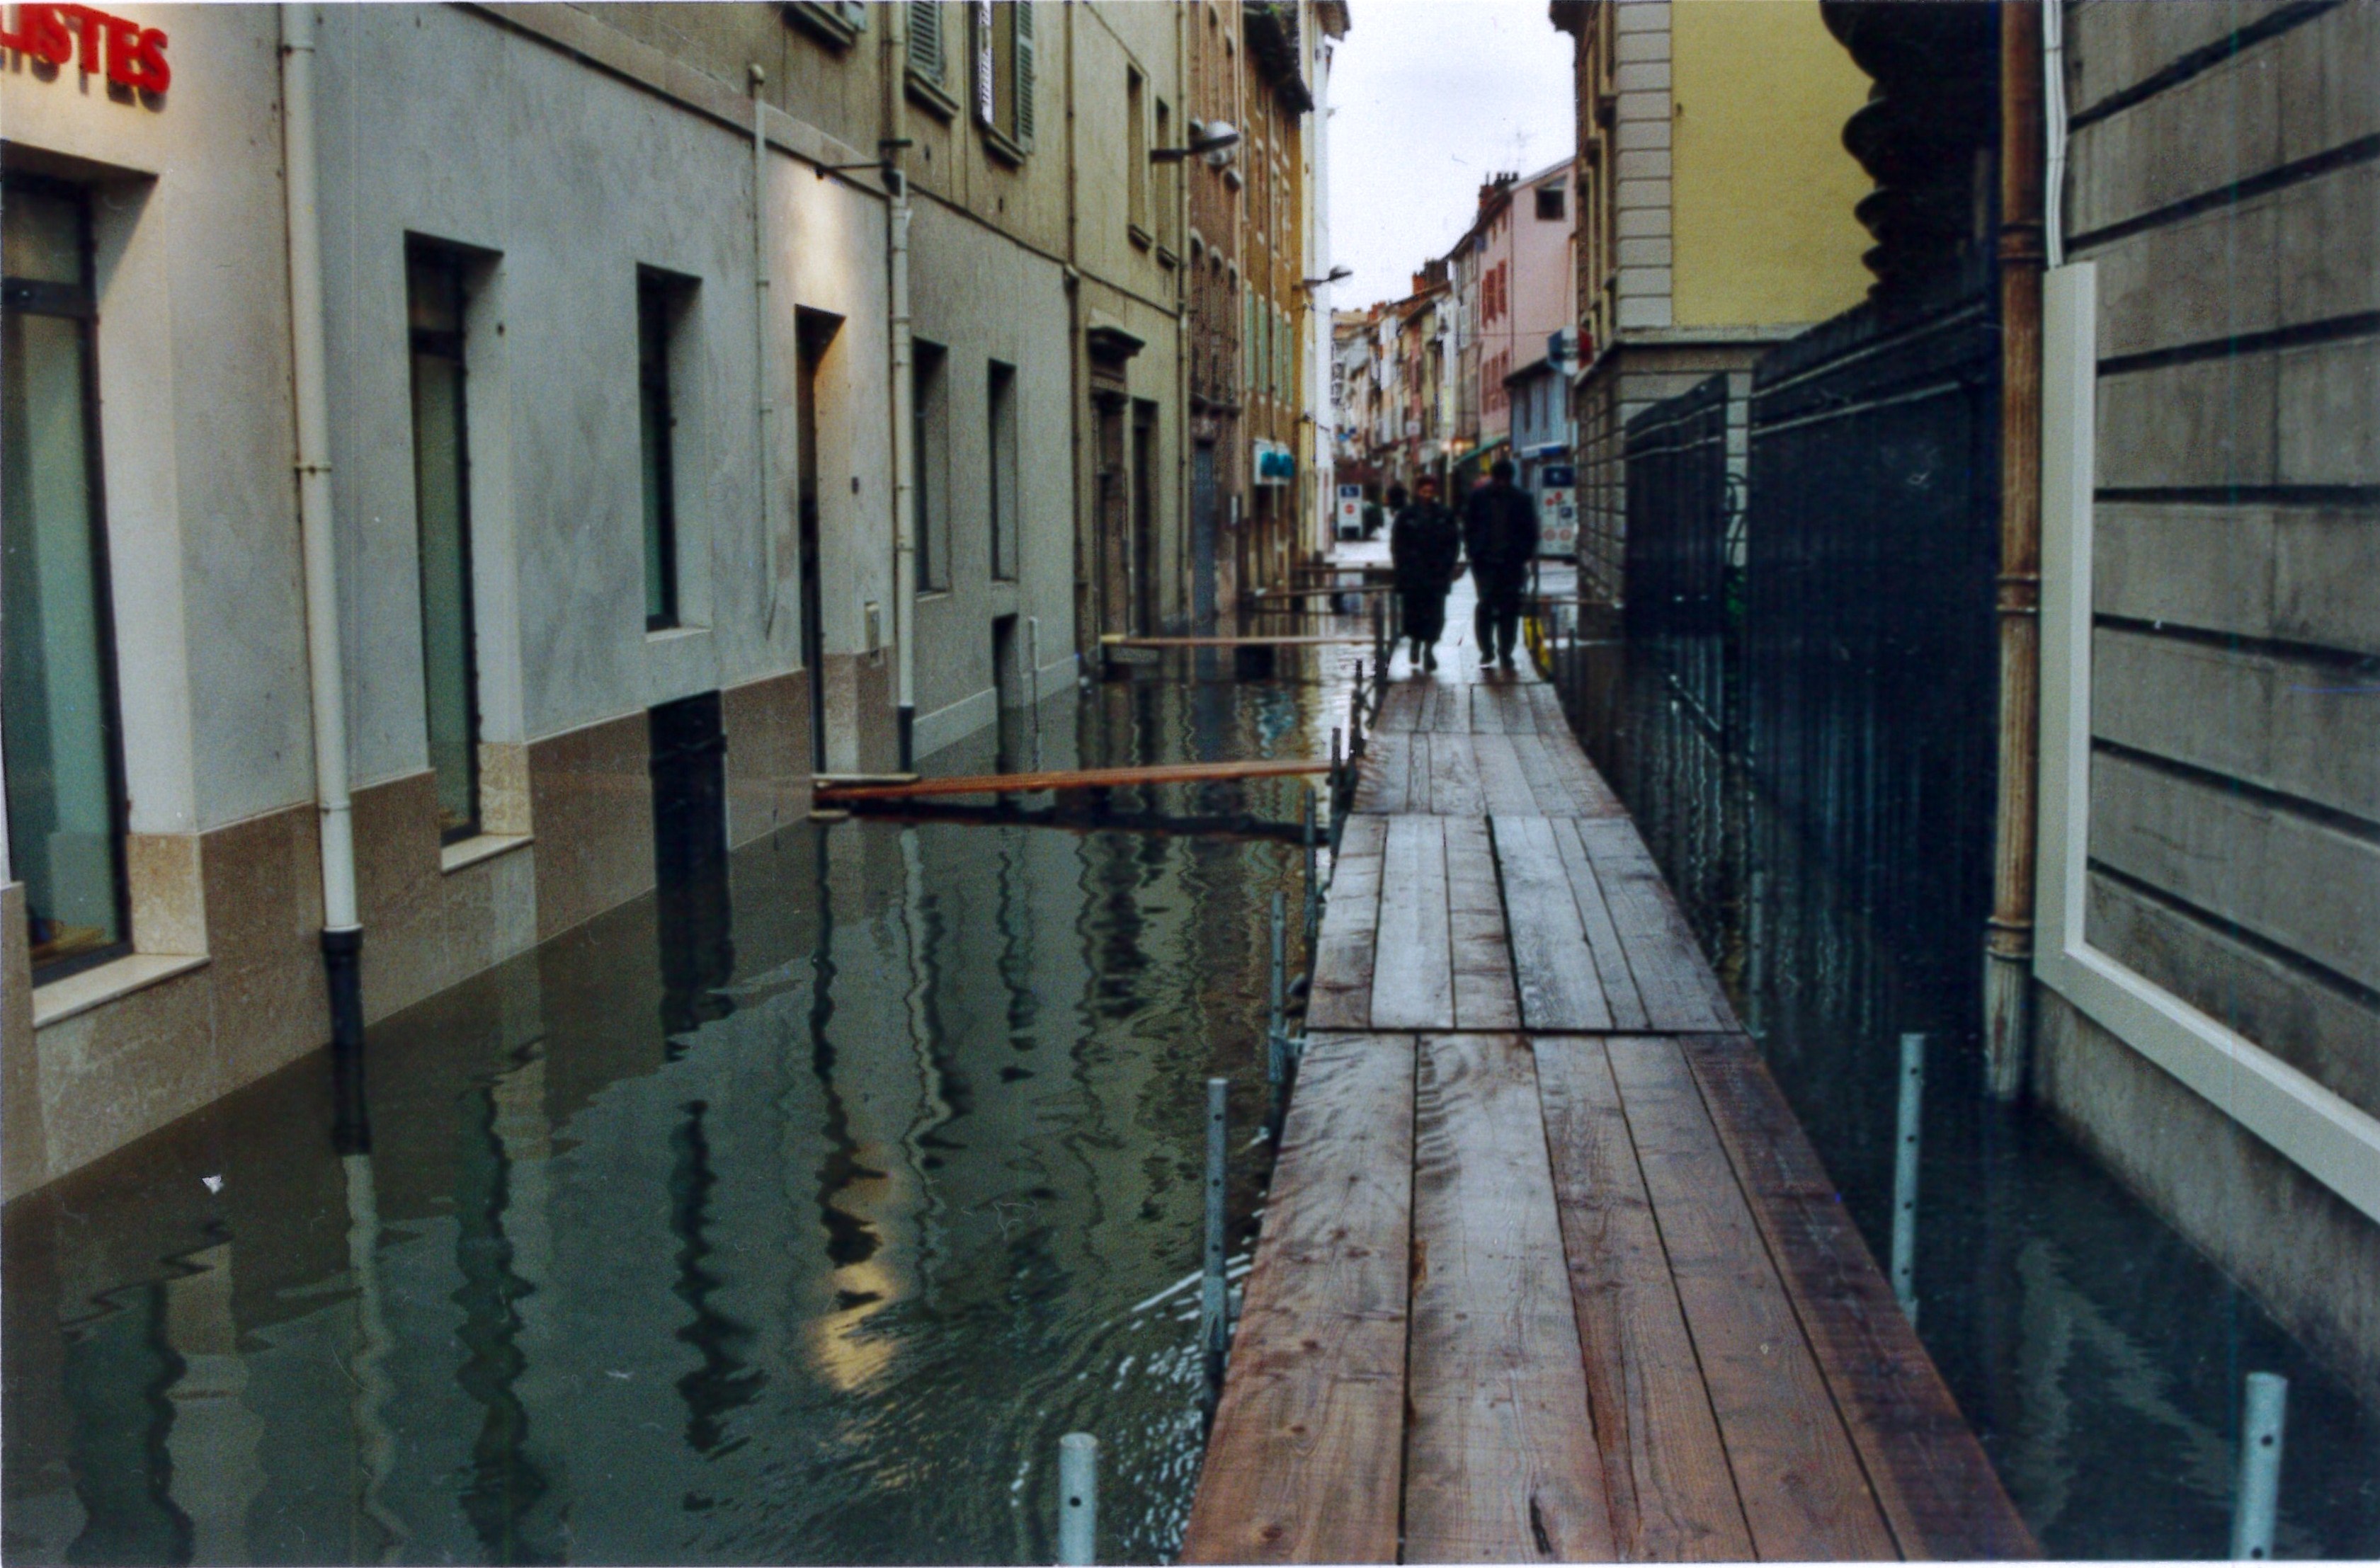 Crue de la Saône en 2001 à Mâcon